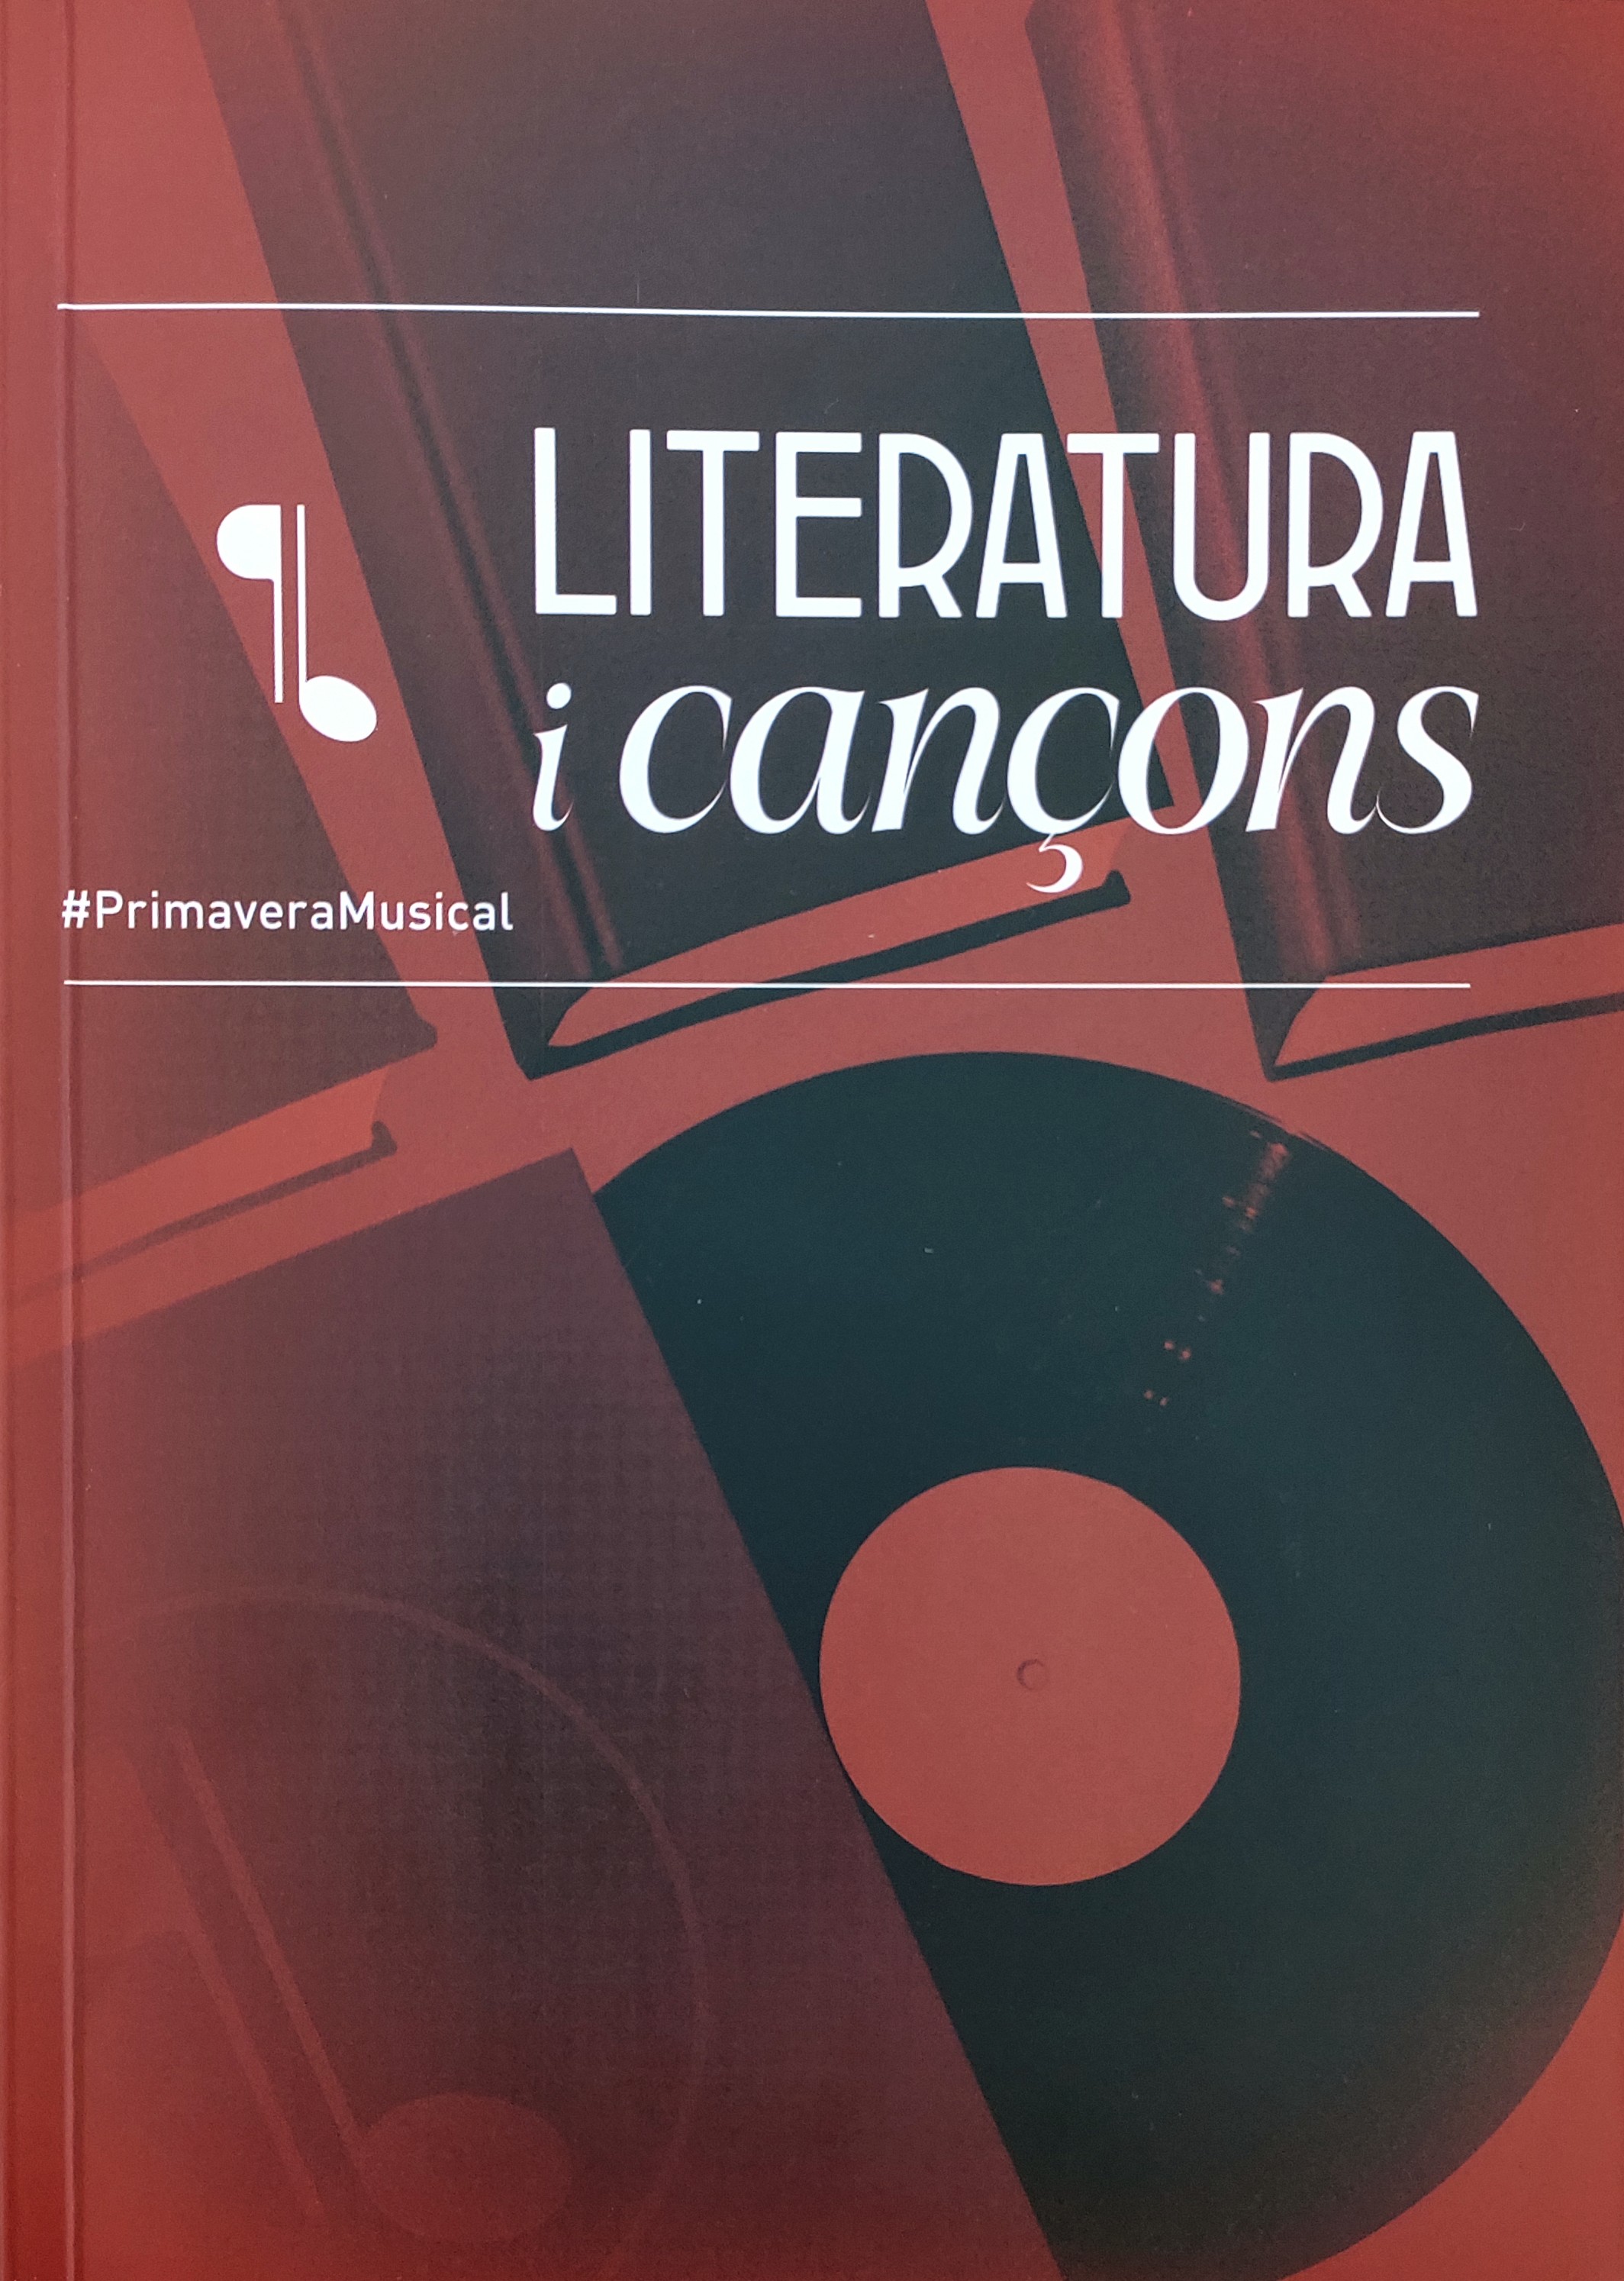 Imagen de portada del libro Literatura i cançons